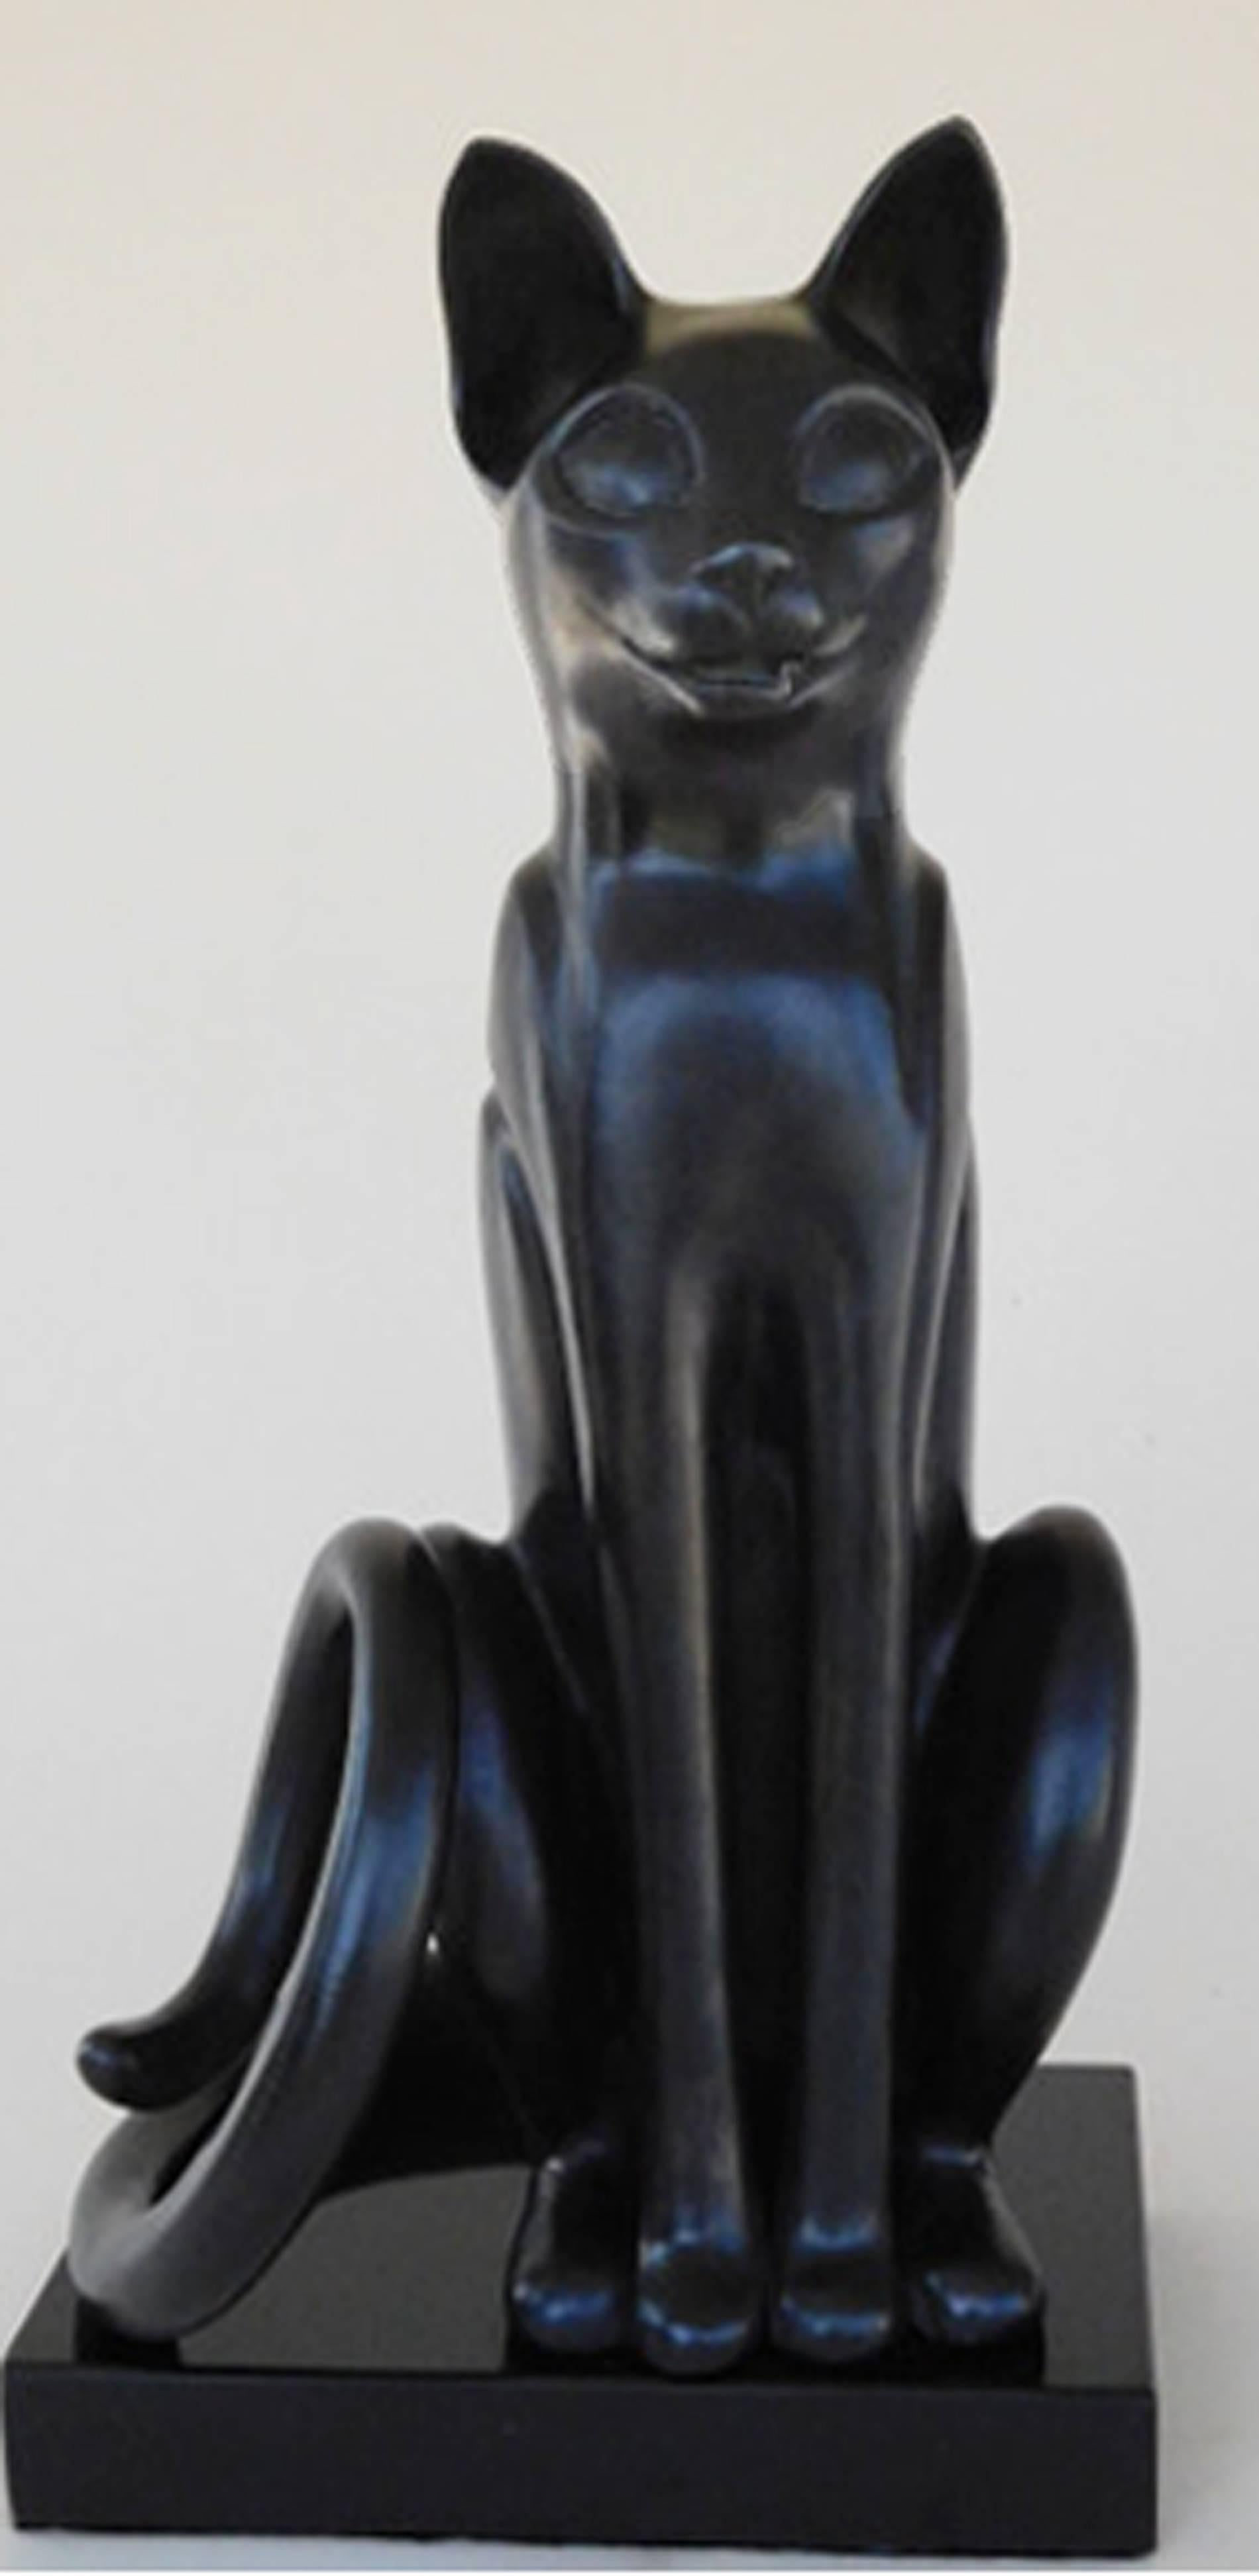 Bast ( Chat assis en bronze avec patine noire) - Sculpture de Paula Blackman